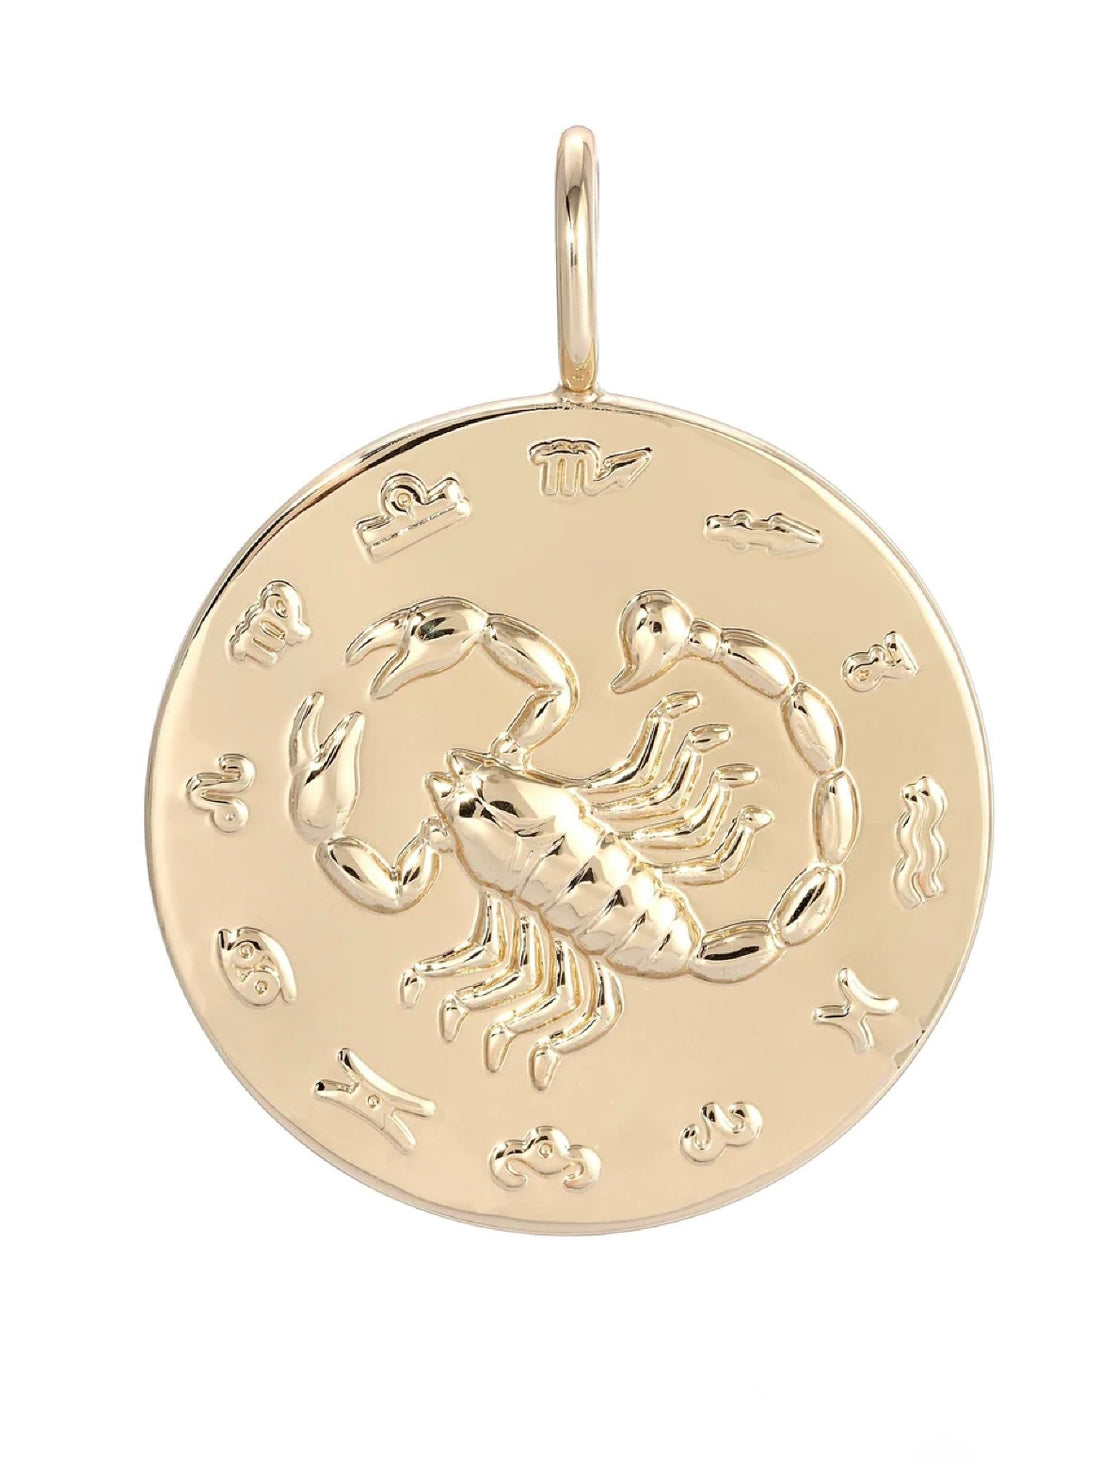 Zodiac Pendant Charm in Gold - Scorpio